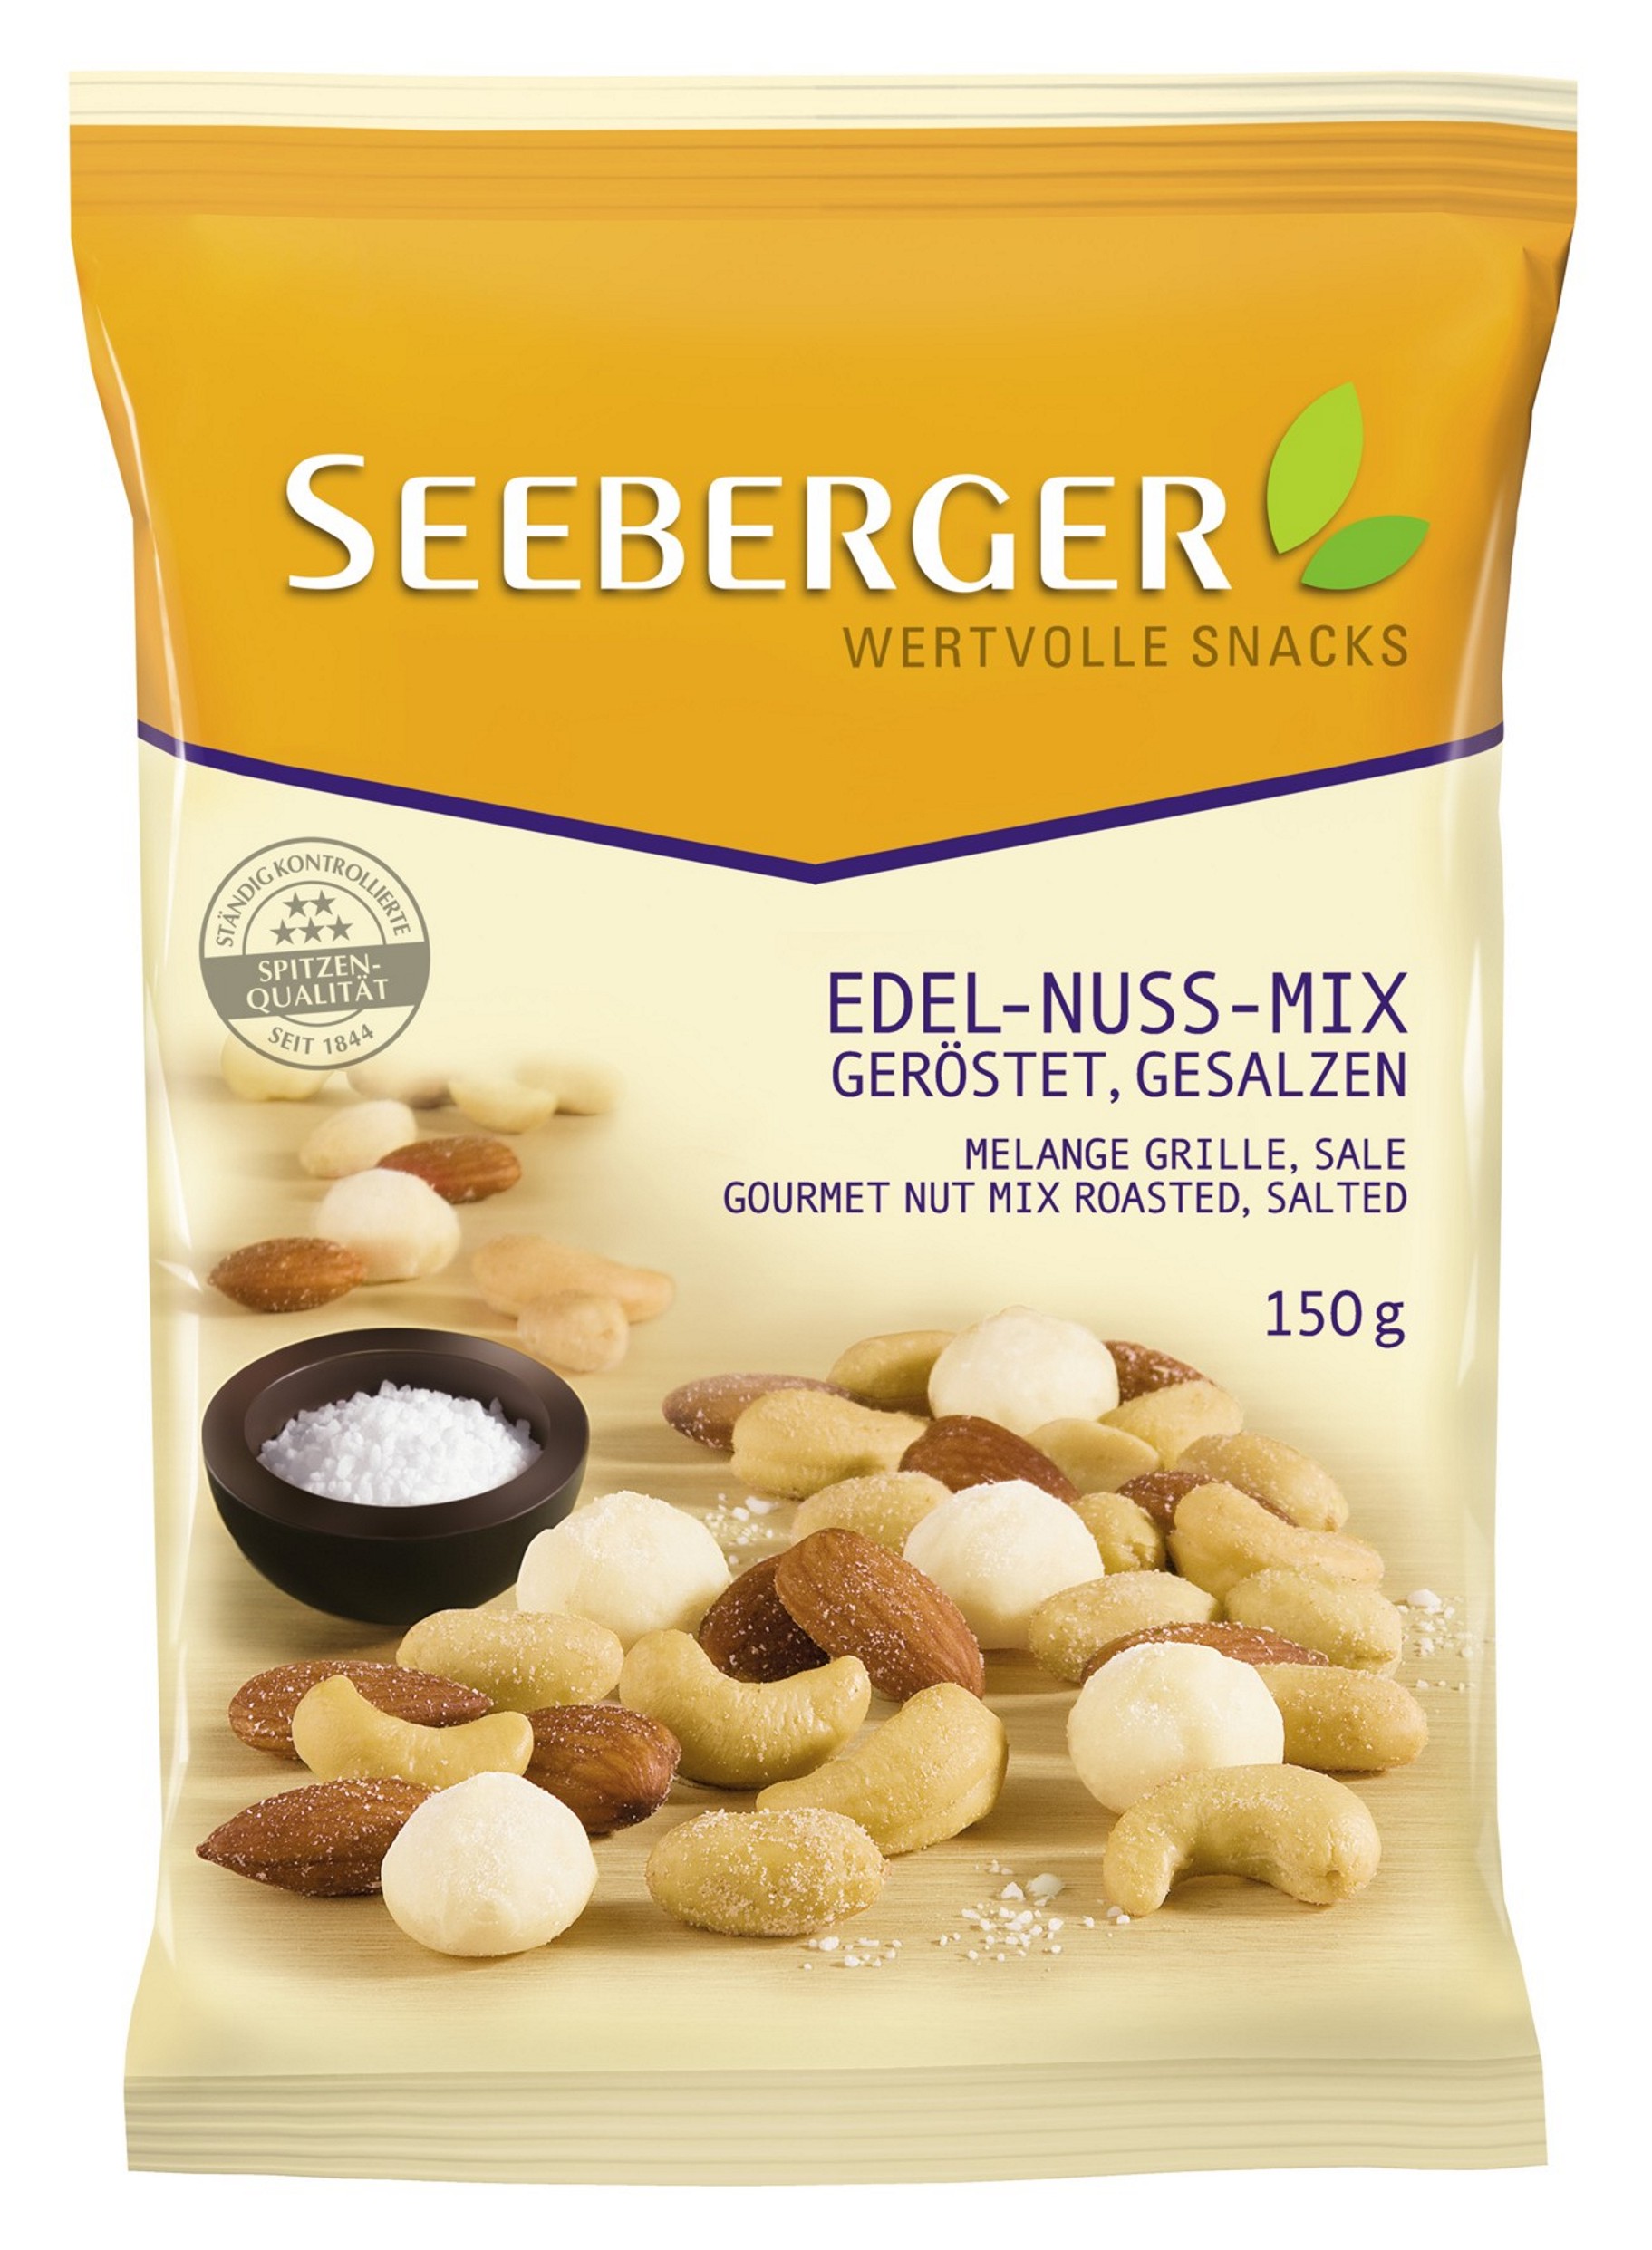 · Nuts/Seeds / Beverage GmbH Prepared/Processed grams) Stable) Tobacco / - mynetfair Seeberger (Shelf Edel-Nuss-Mix Nuts/Seeds Fruits/Vegetables/Nuts/Seeds (150 Prepared/Processed - Food